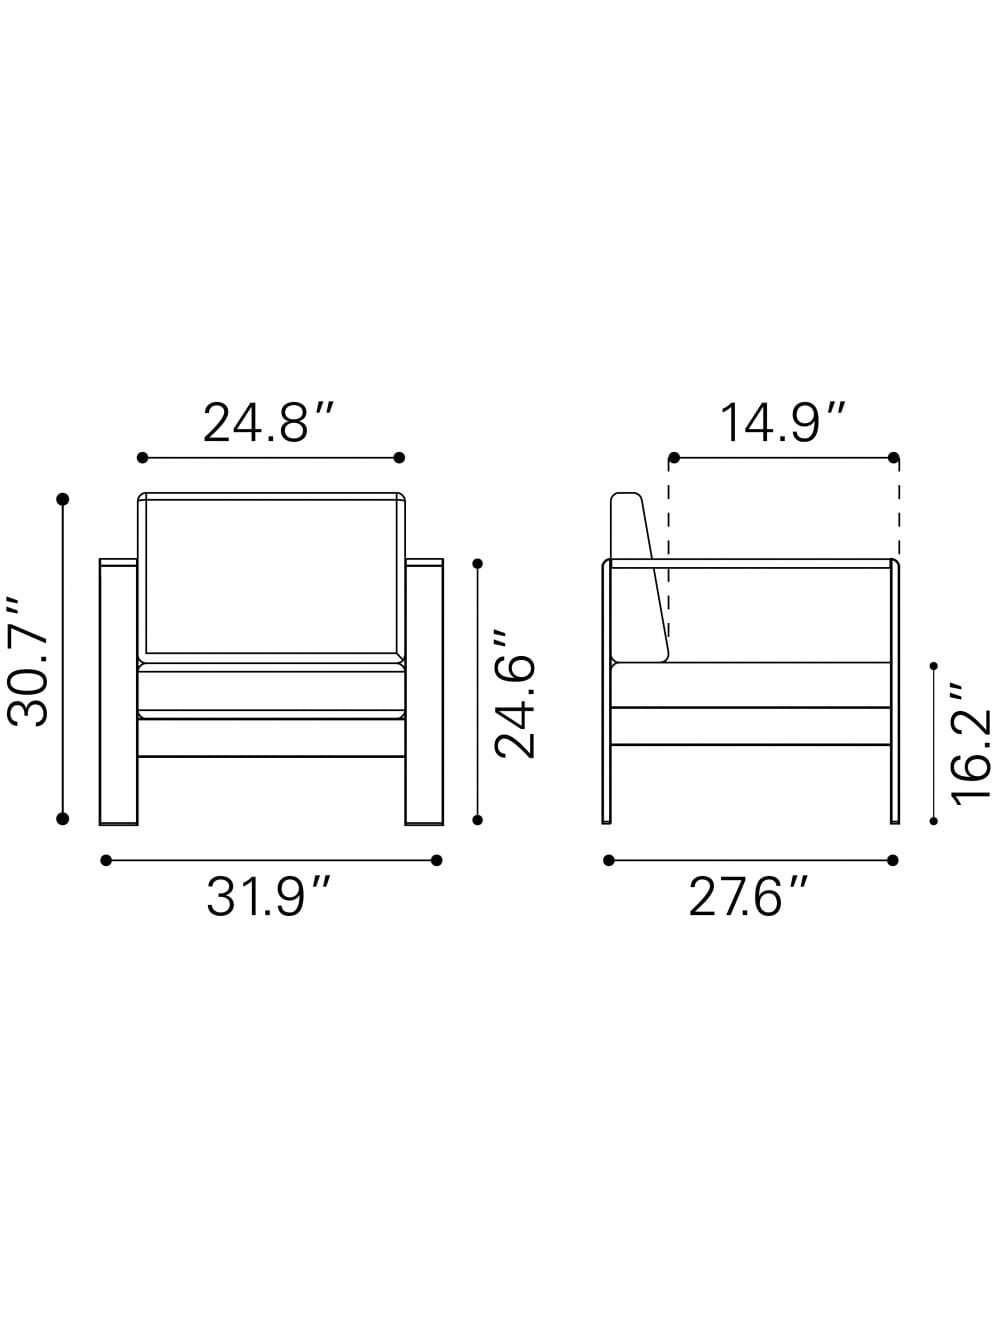 ZOU Outdoor Living Seating ZOU - Cosmopolitan Arm Chair Gray | 703985